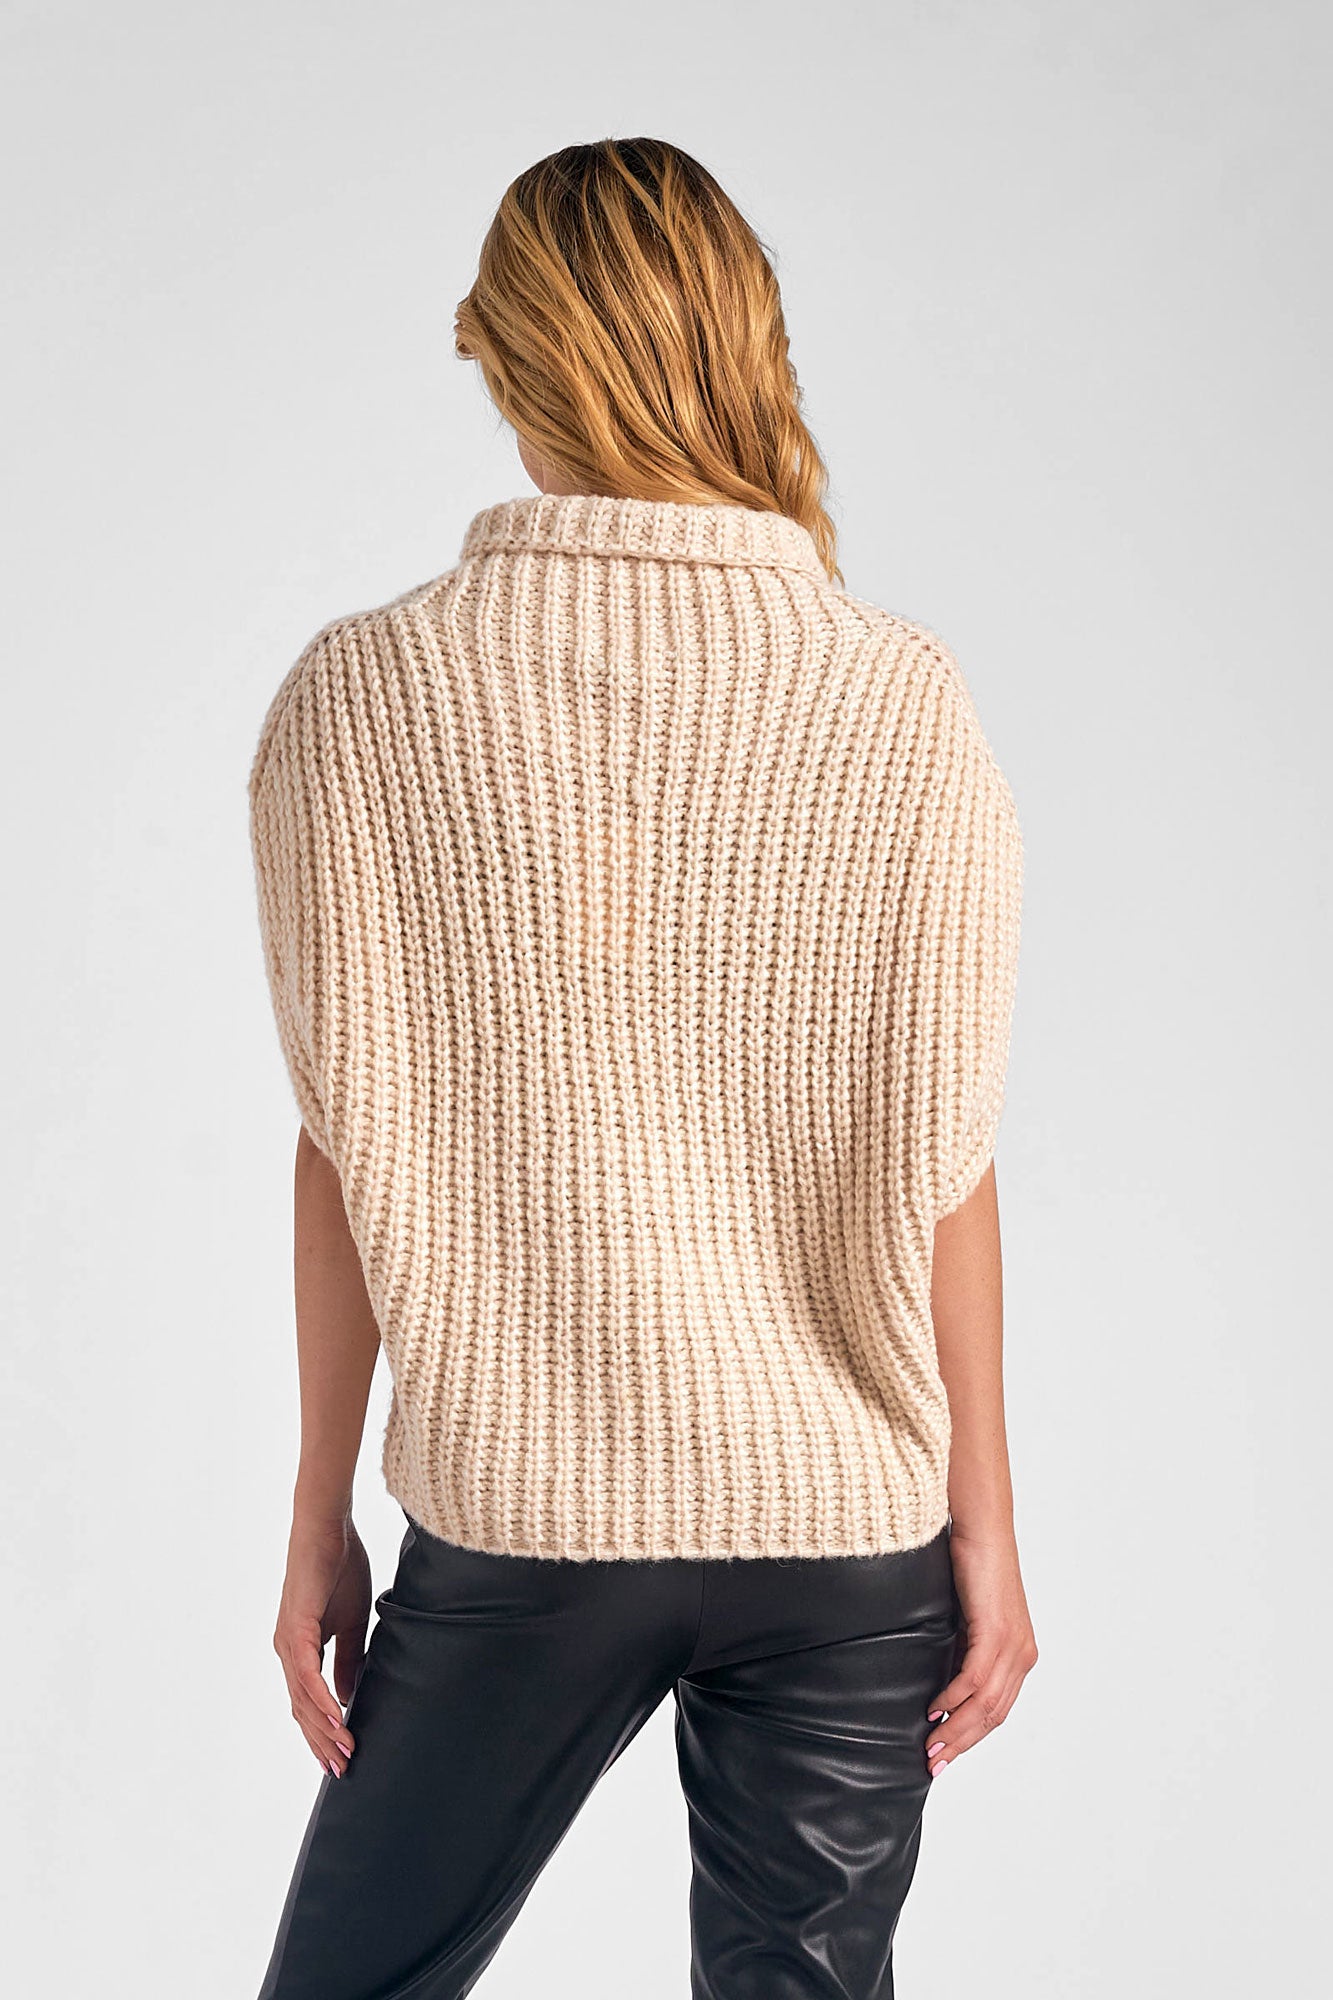 Elan Tan Short Sleeve Turtleneck Sweater